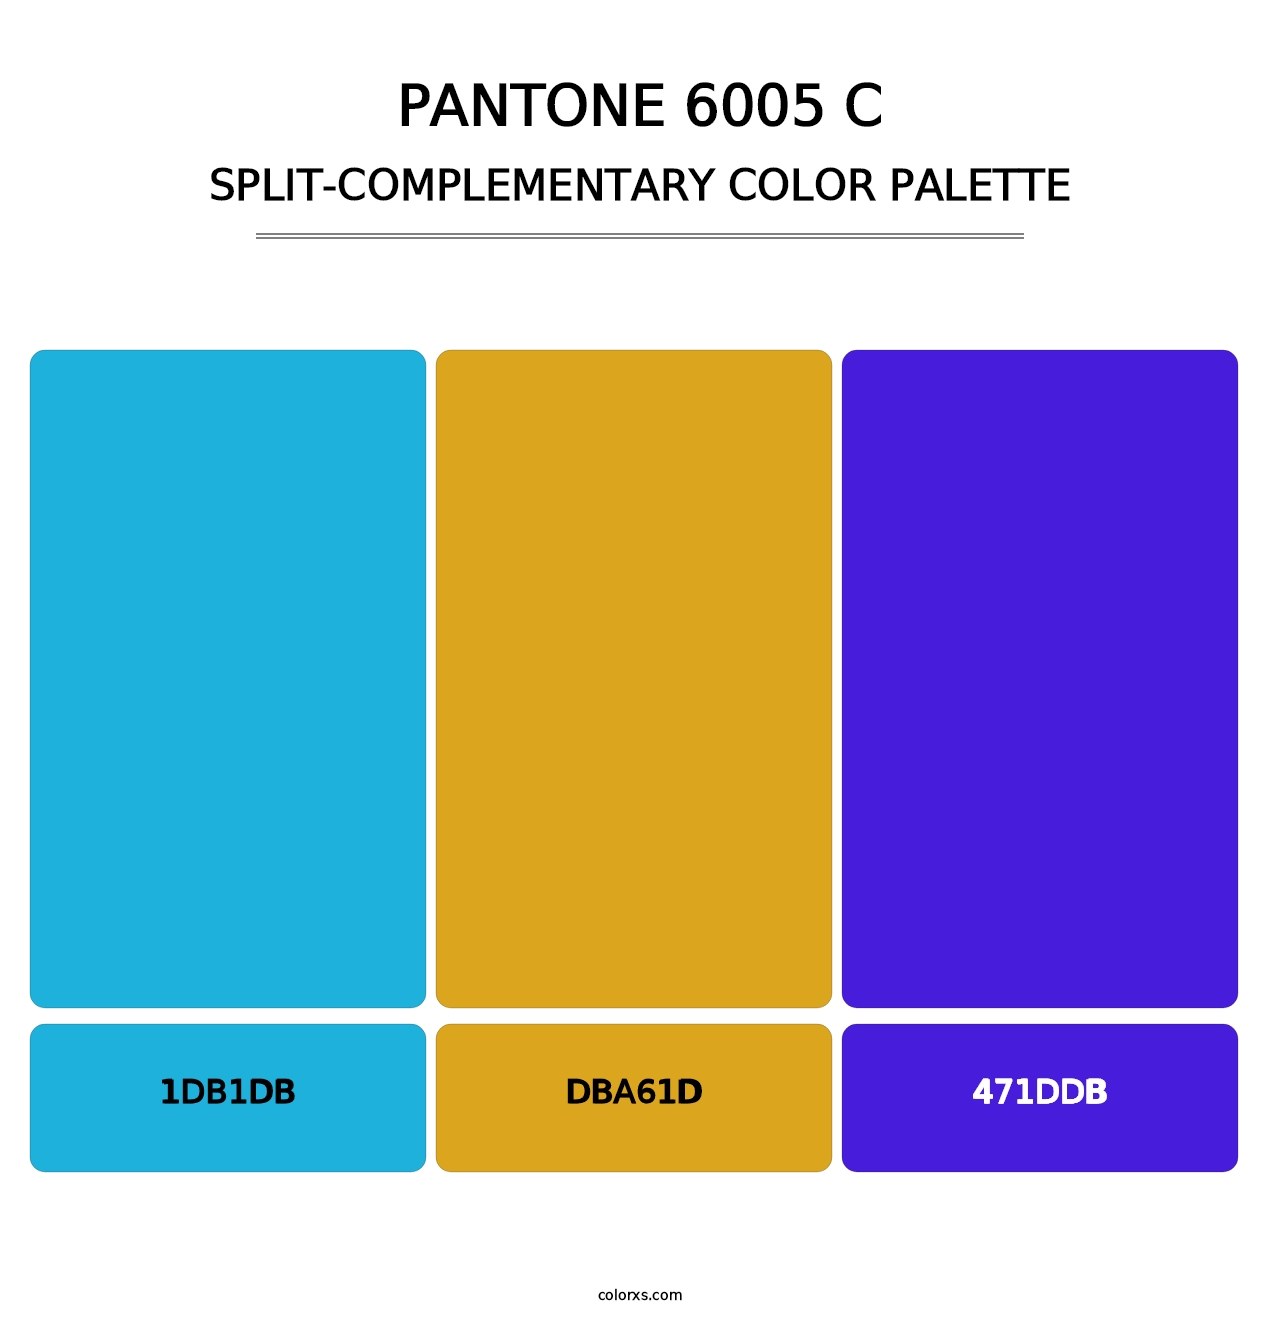 PANTONE 6005 C - Split-Complementary Color Palette